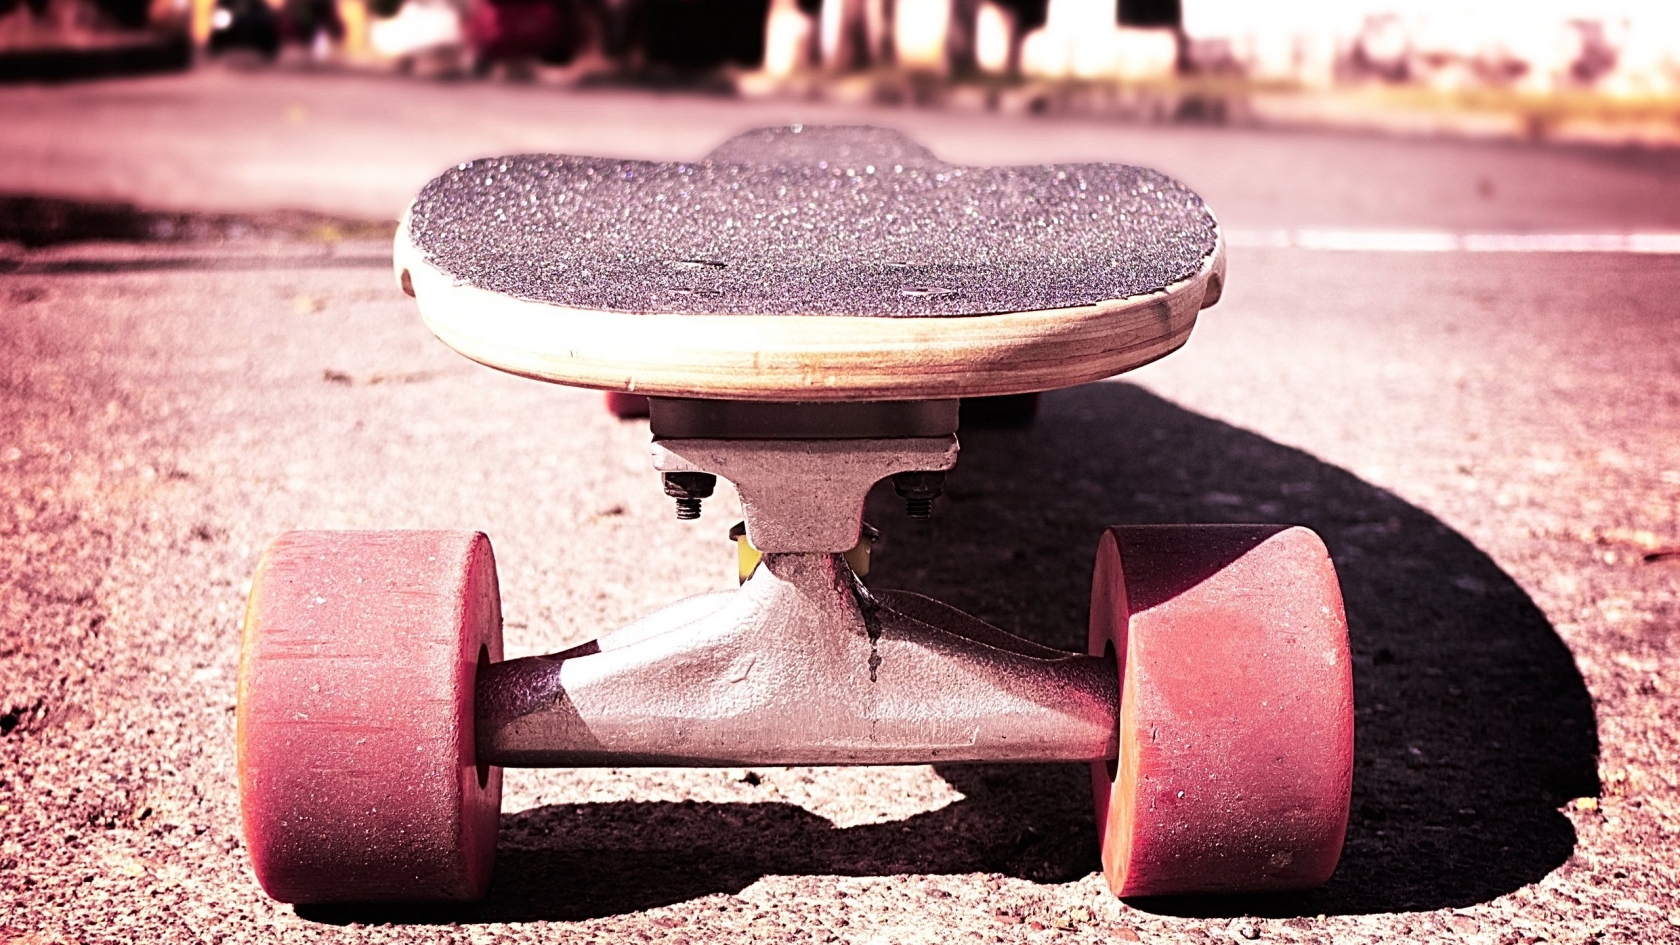 Cool skateboard for 1680 x 945 HDTV resolution